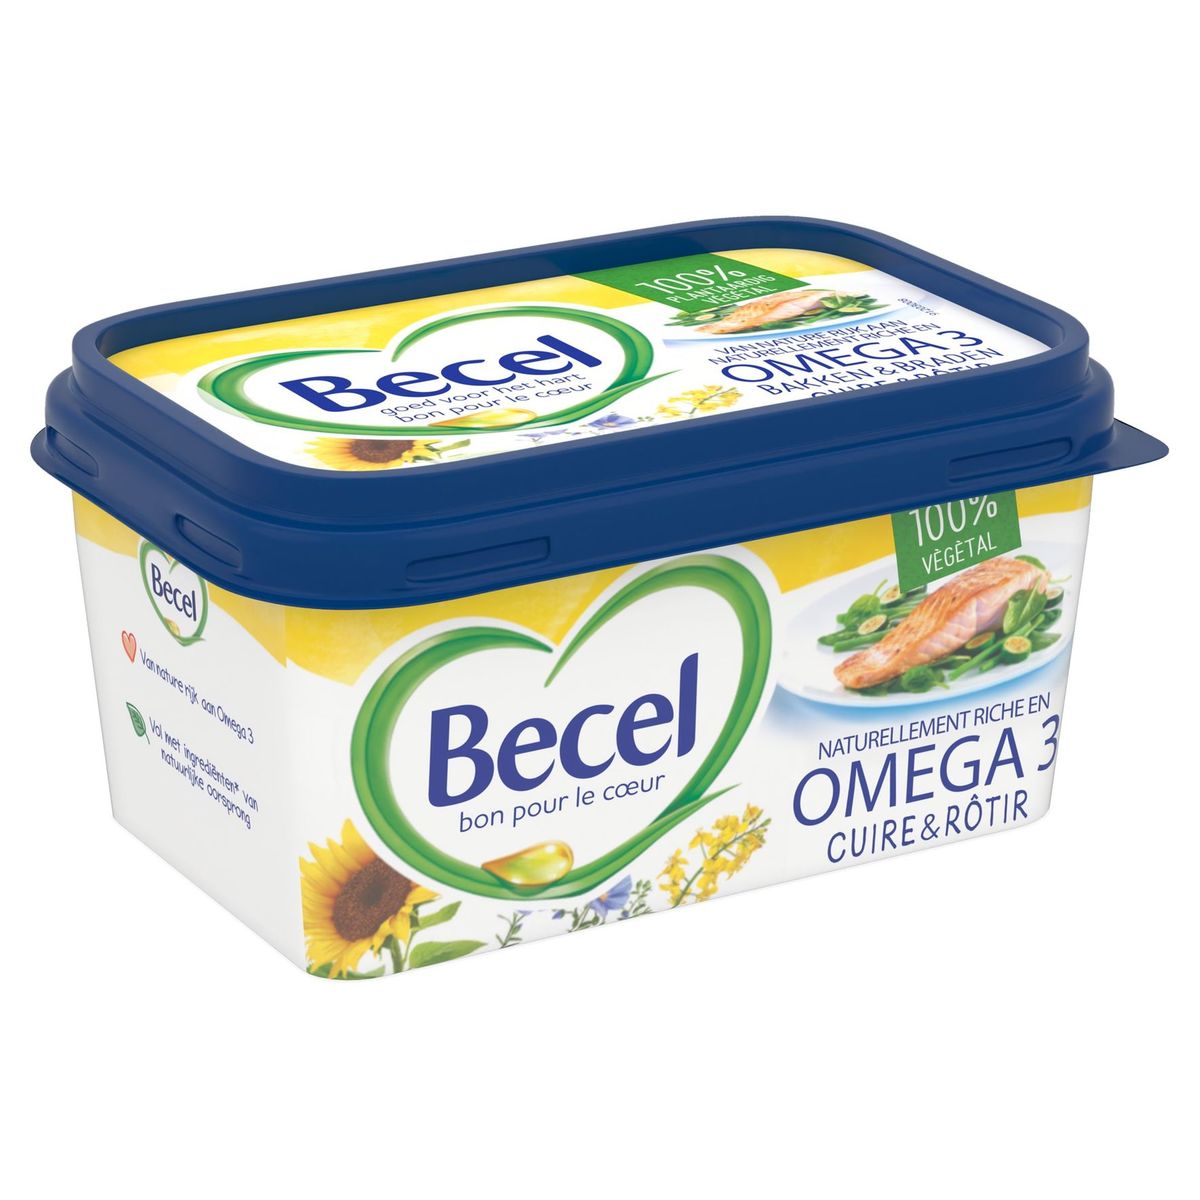 Becel Cuire et Rôtir Original Oméga 3 450 g